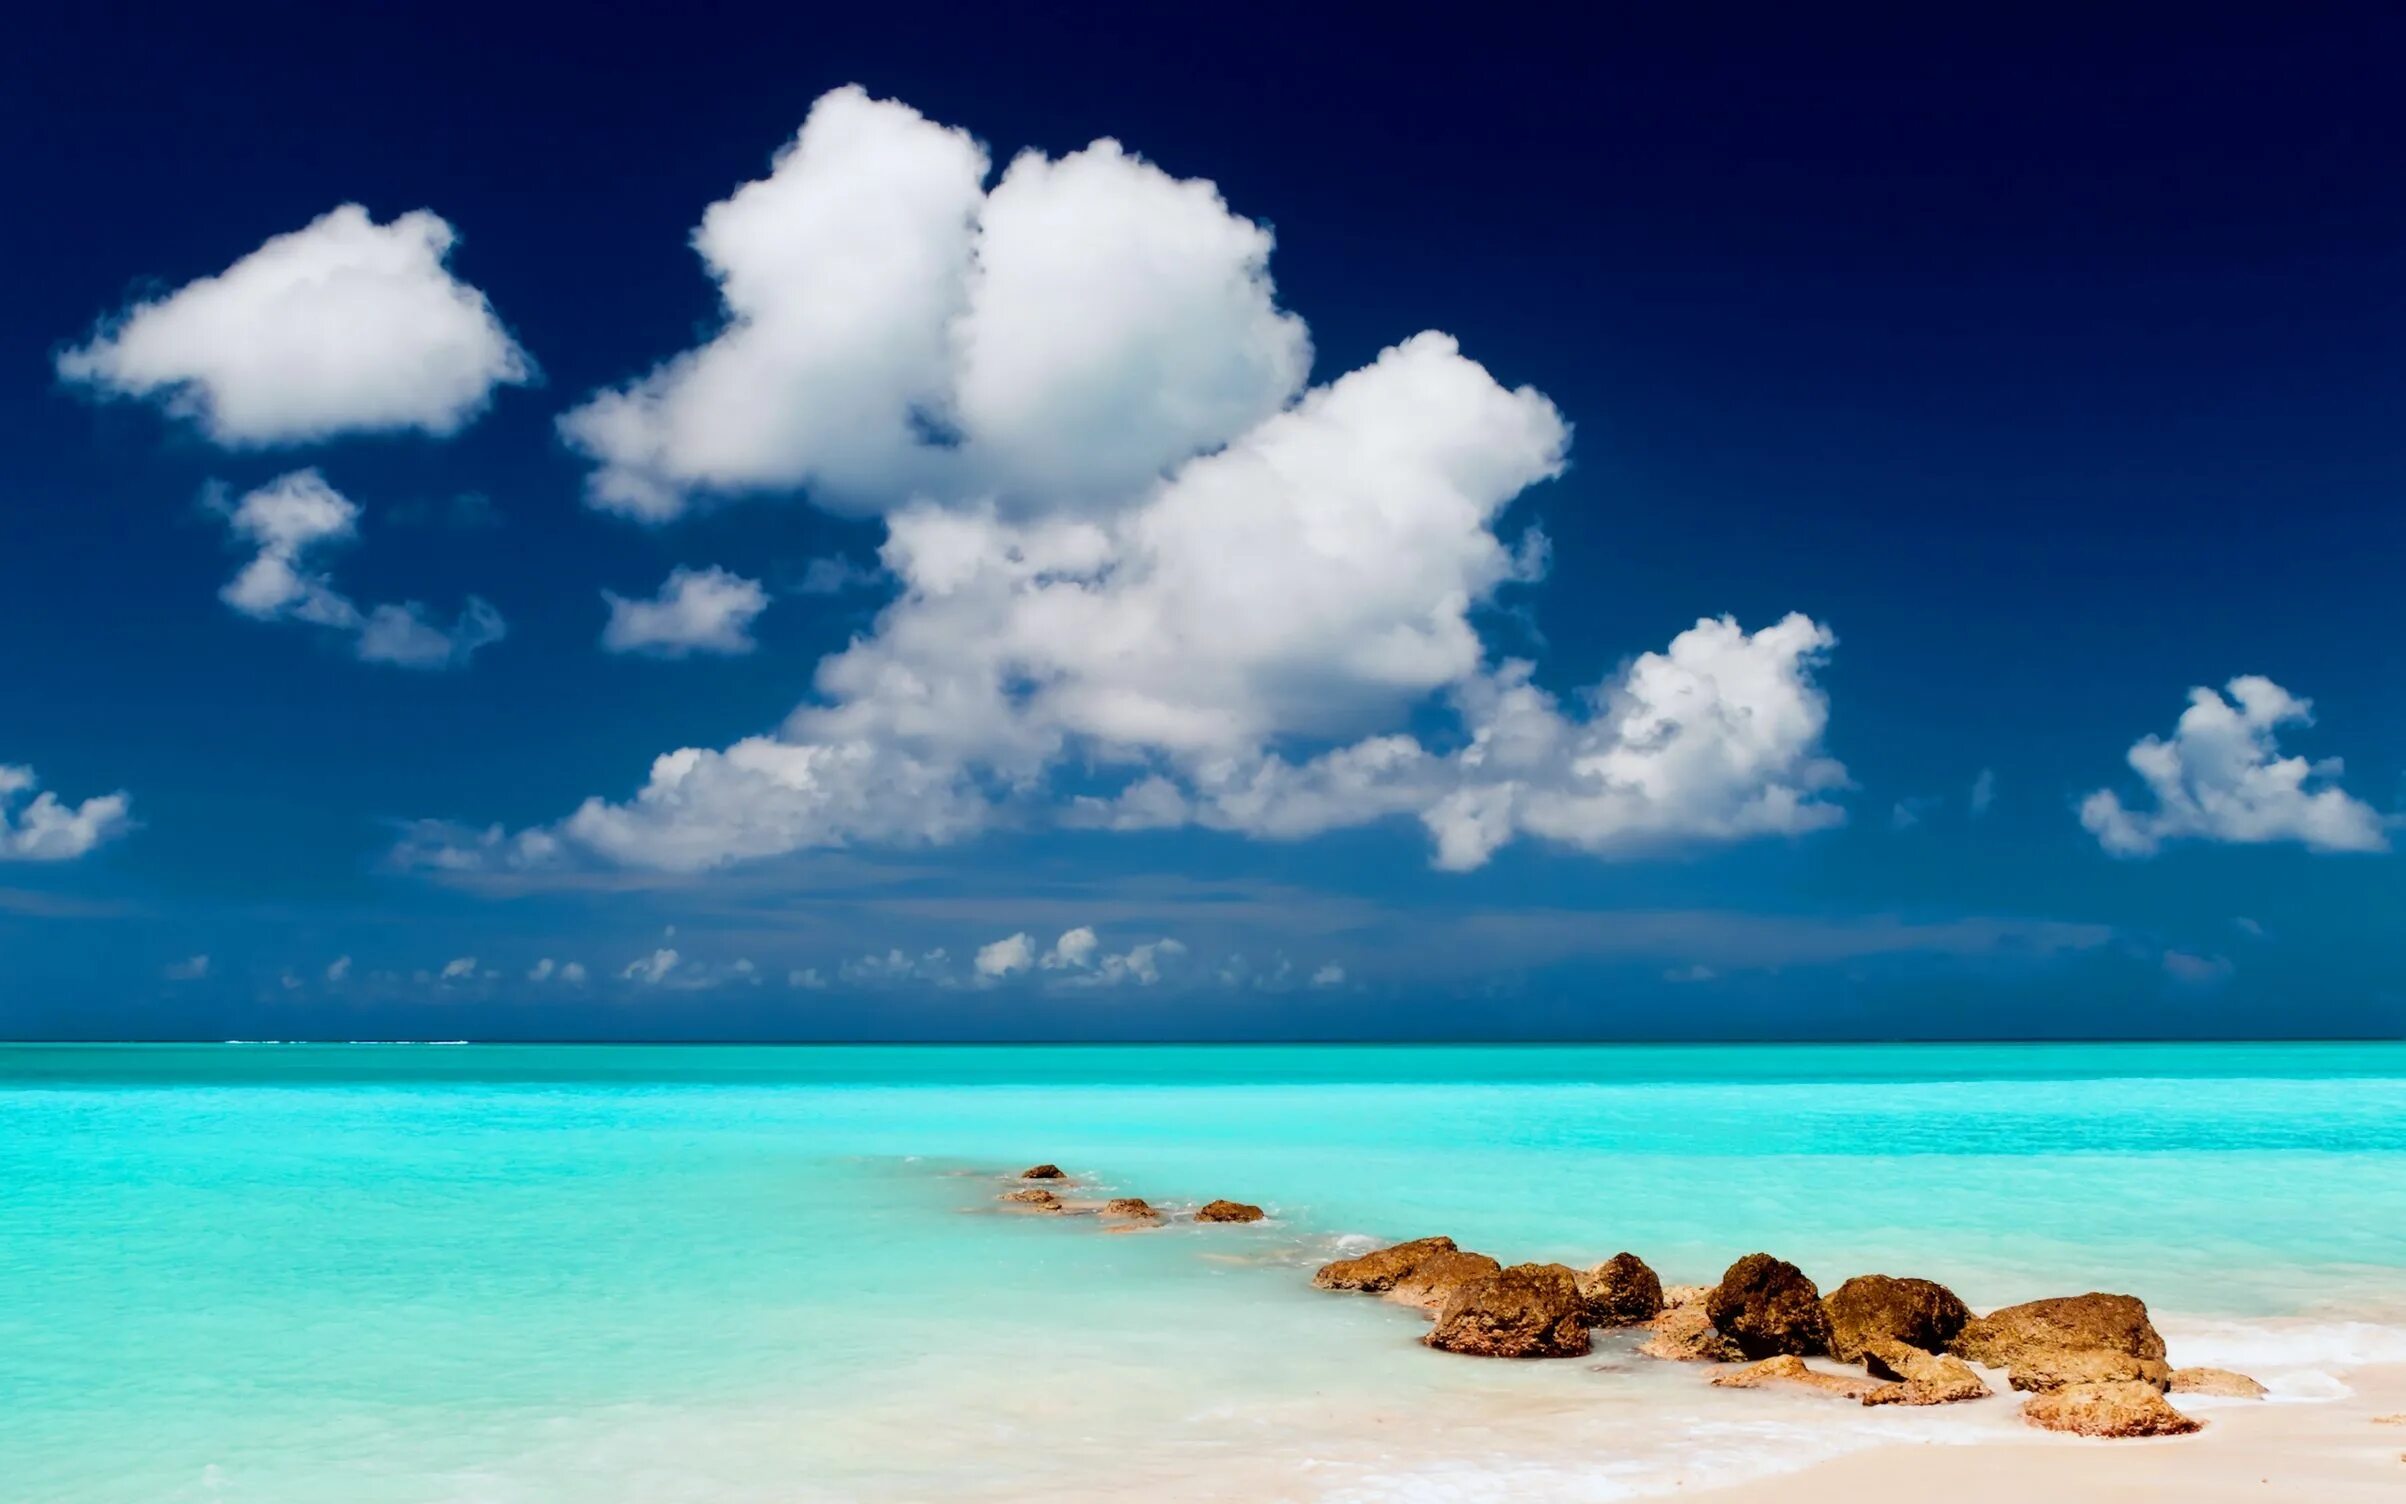 Остров Саона голубая Лагуна. Парадиз остров Карибского моря. Красивая природа море. Красивые морские пейзажи. Картинки тема море